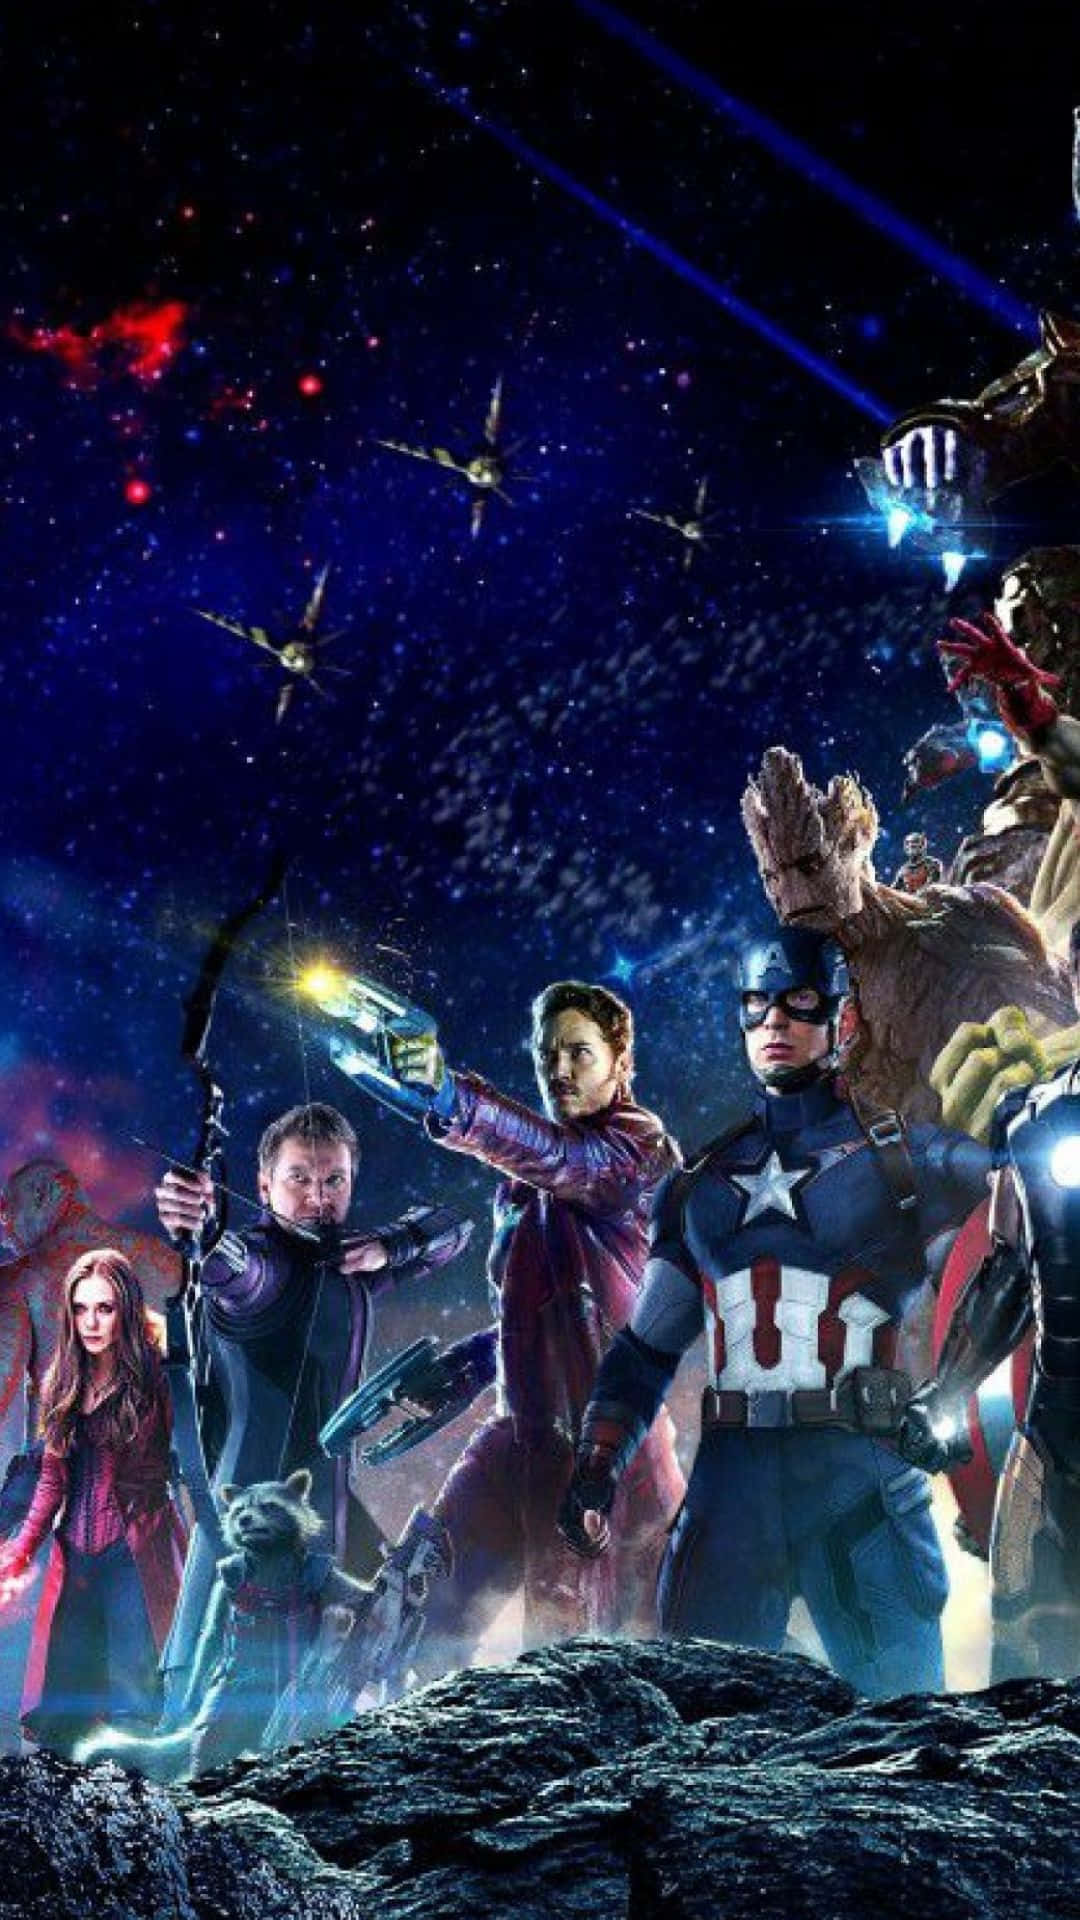 Androidmarvel's Avengers Avengers In Space Bakgrundsbild